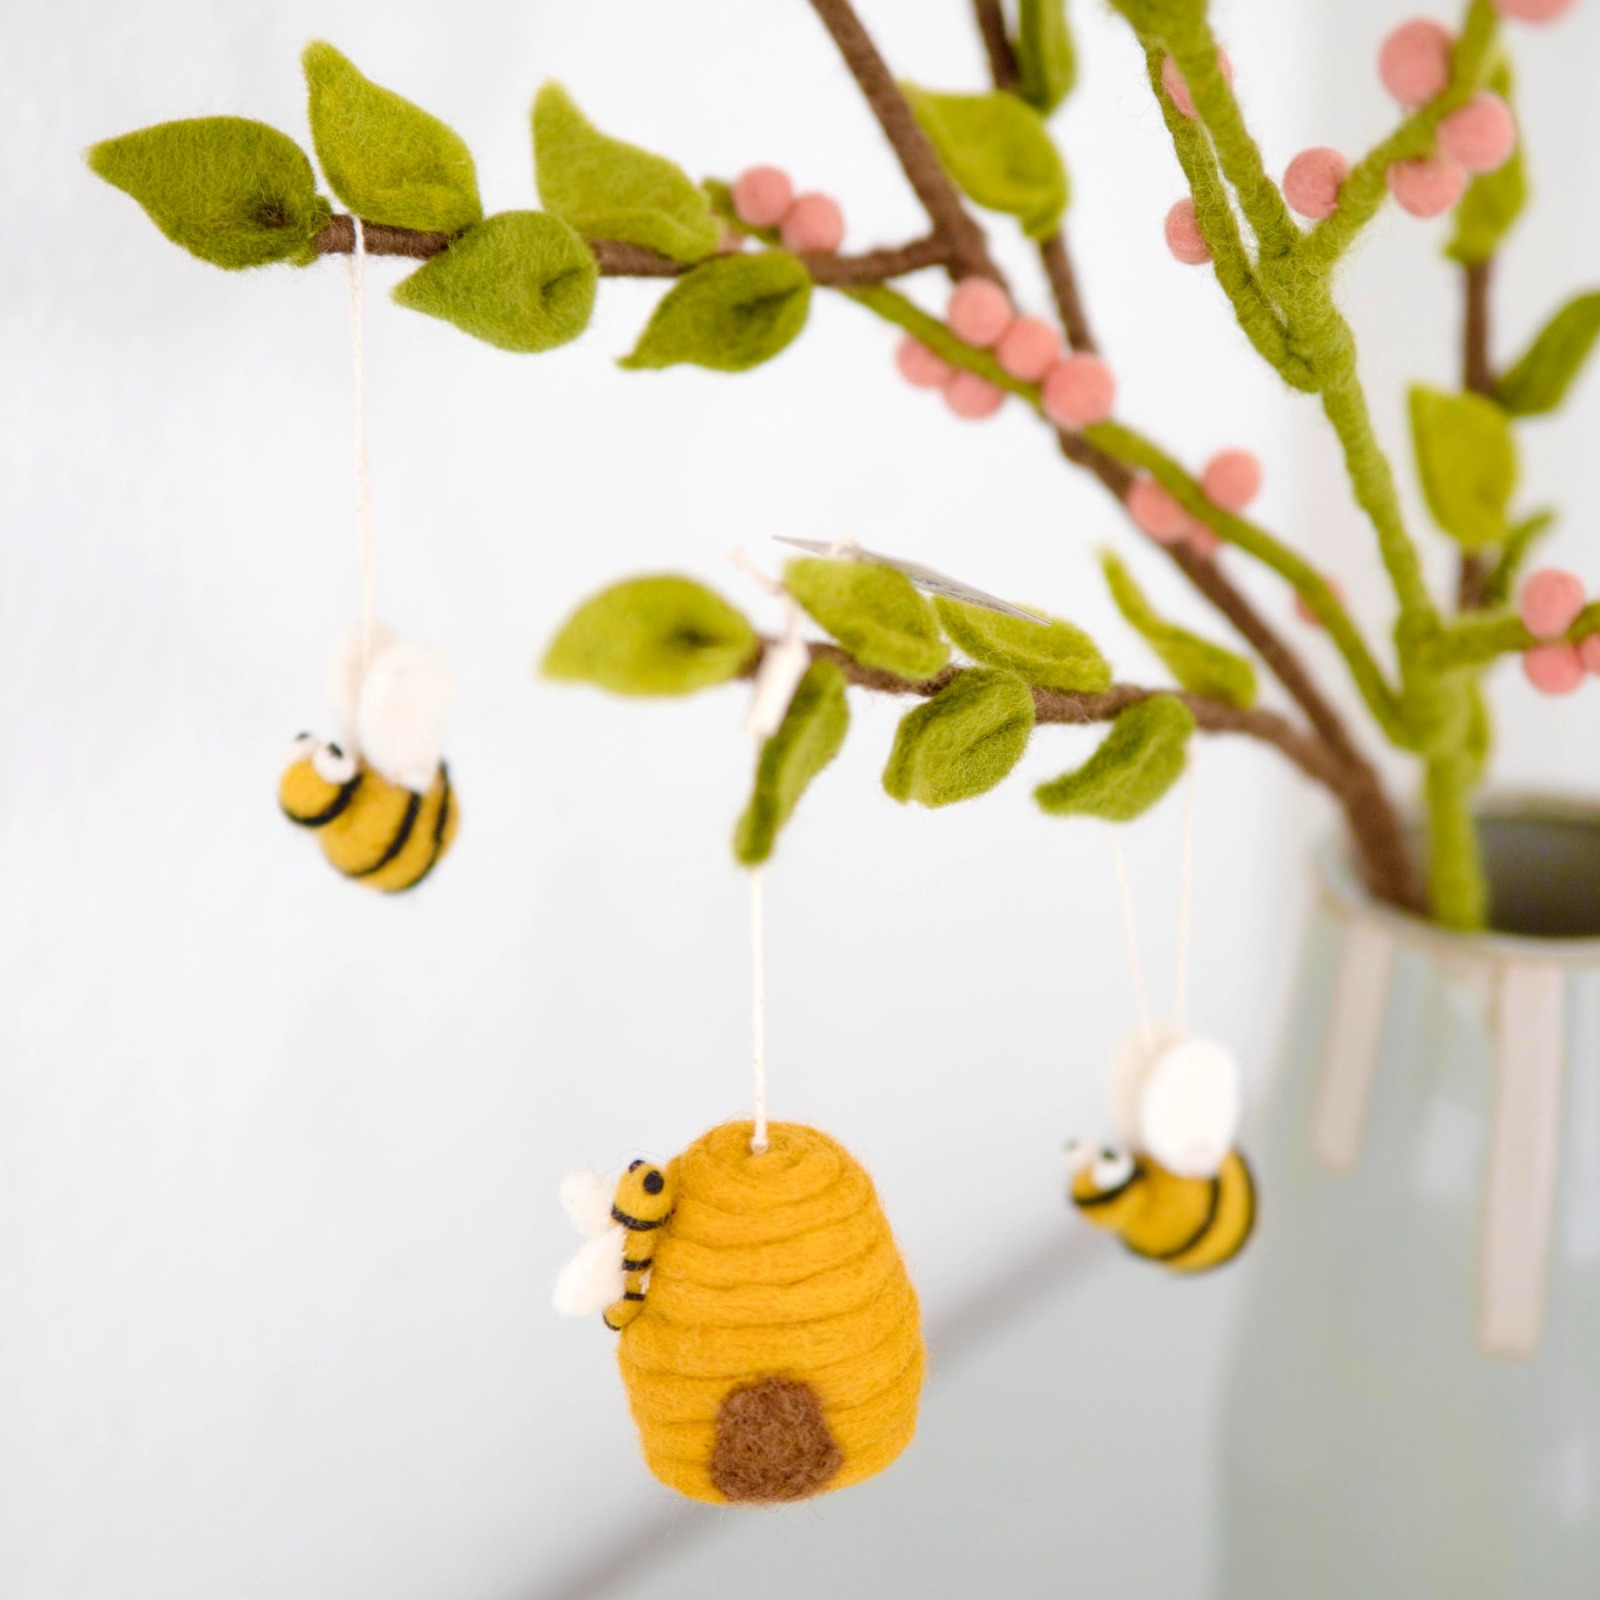 Hübscher Bienenkorb aus Handgefilzter Wolle - Perfekt für Frühlingsschmuck 2